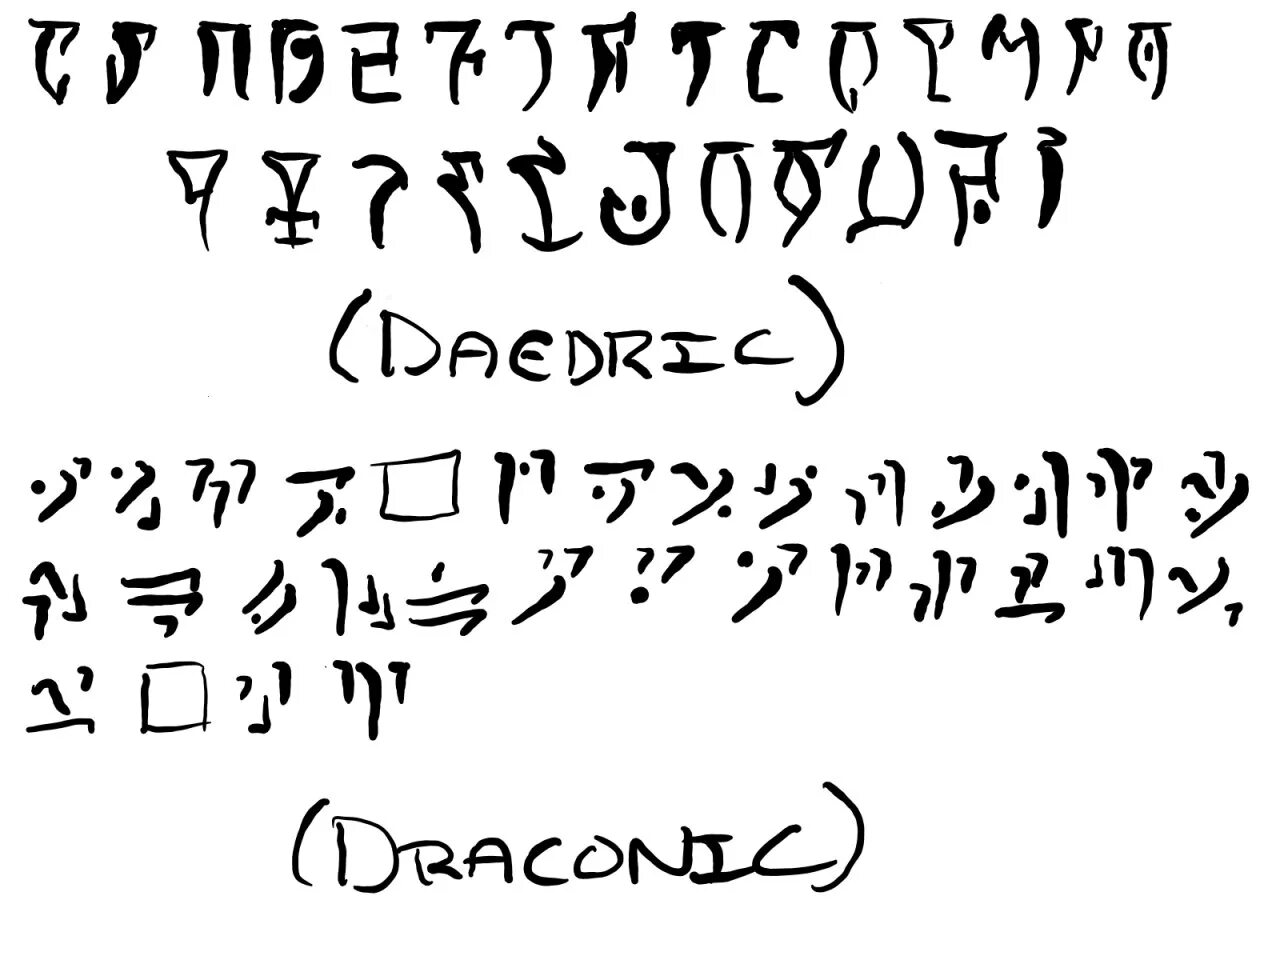 Codex rune. Драконий язык Skyrim алфавит. Скайрим алфавит драконьего языка. Алфавит Драконий язык из Скайрима. Язык драконов Skyrim.